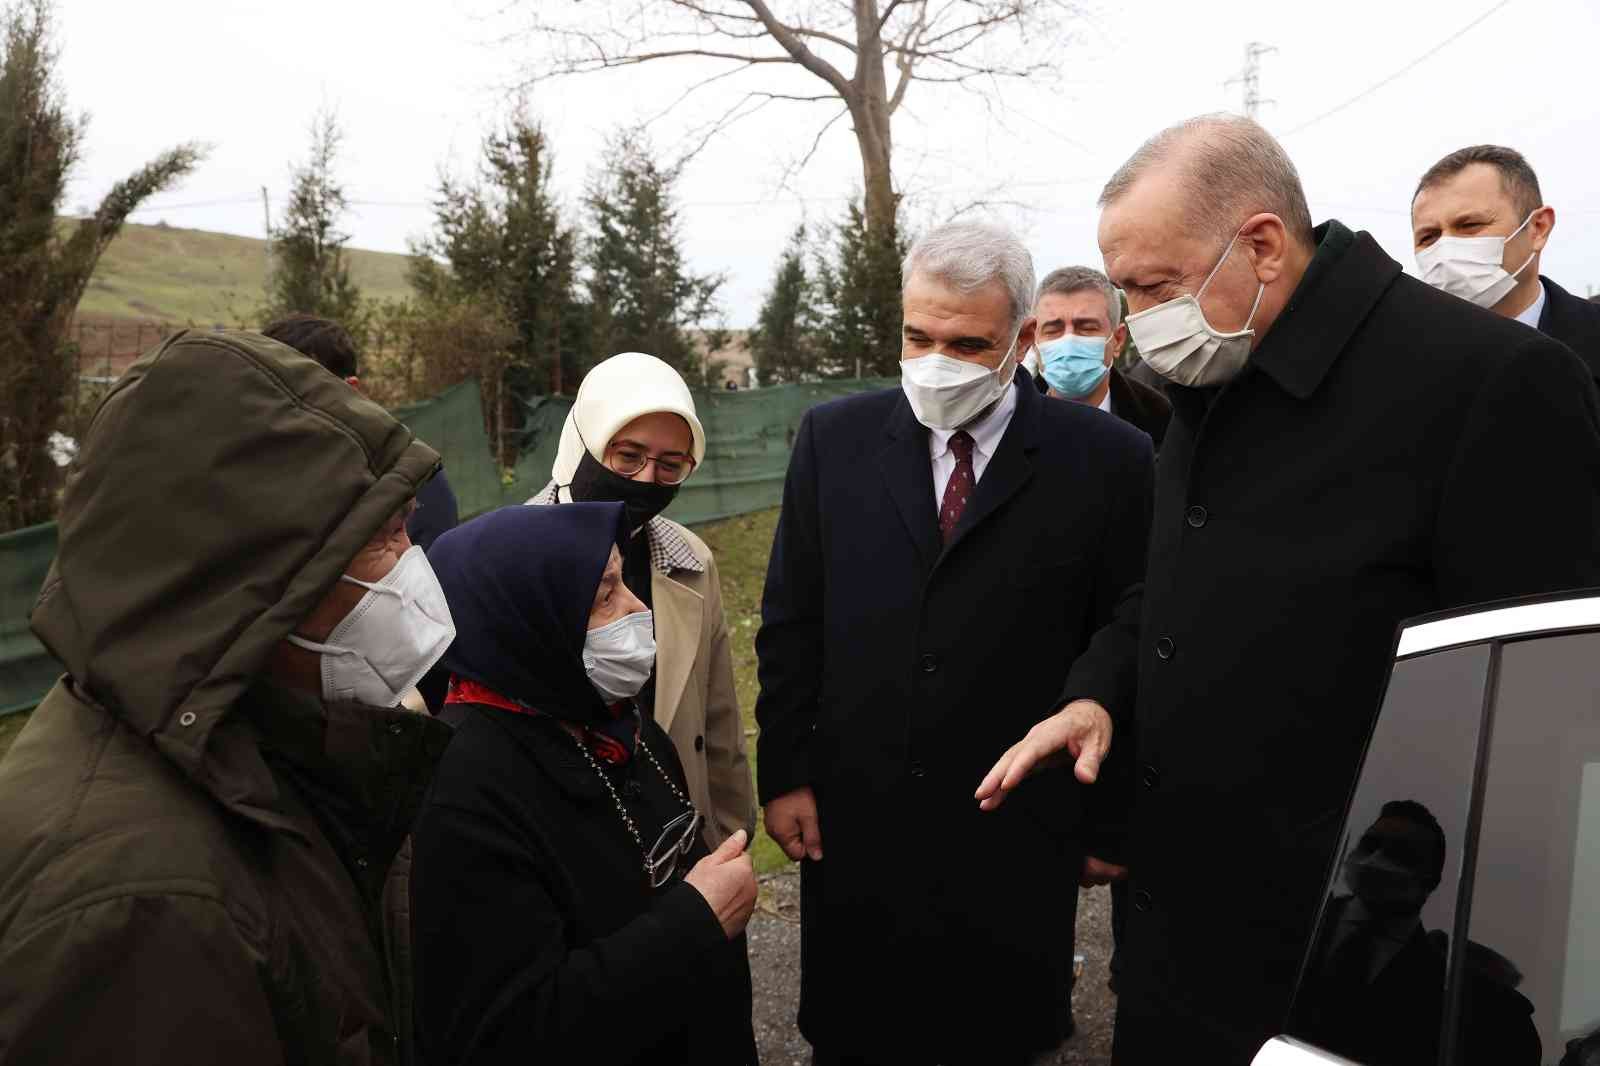 Cumhurbaşkanı Erdoğan’dan, örnek gösterdiği Hatem Kurt’un evine ziyaret #istanbul